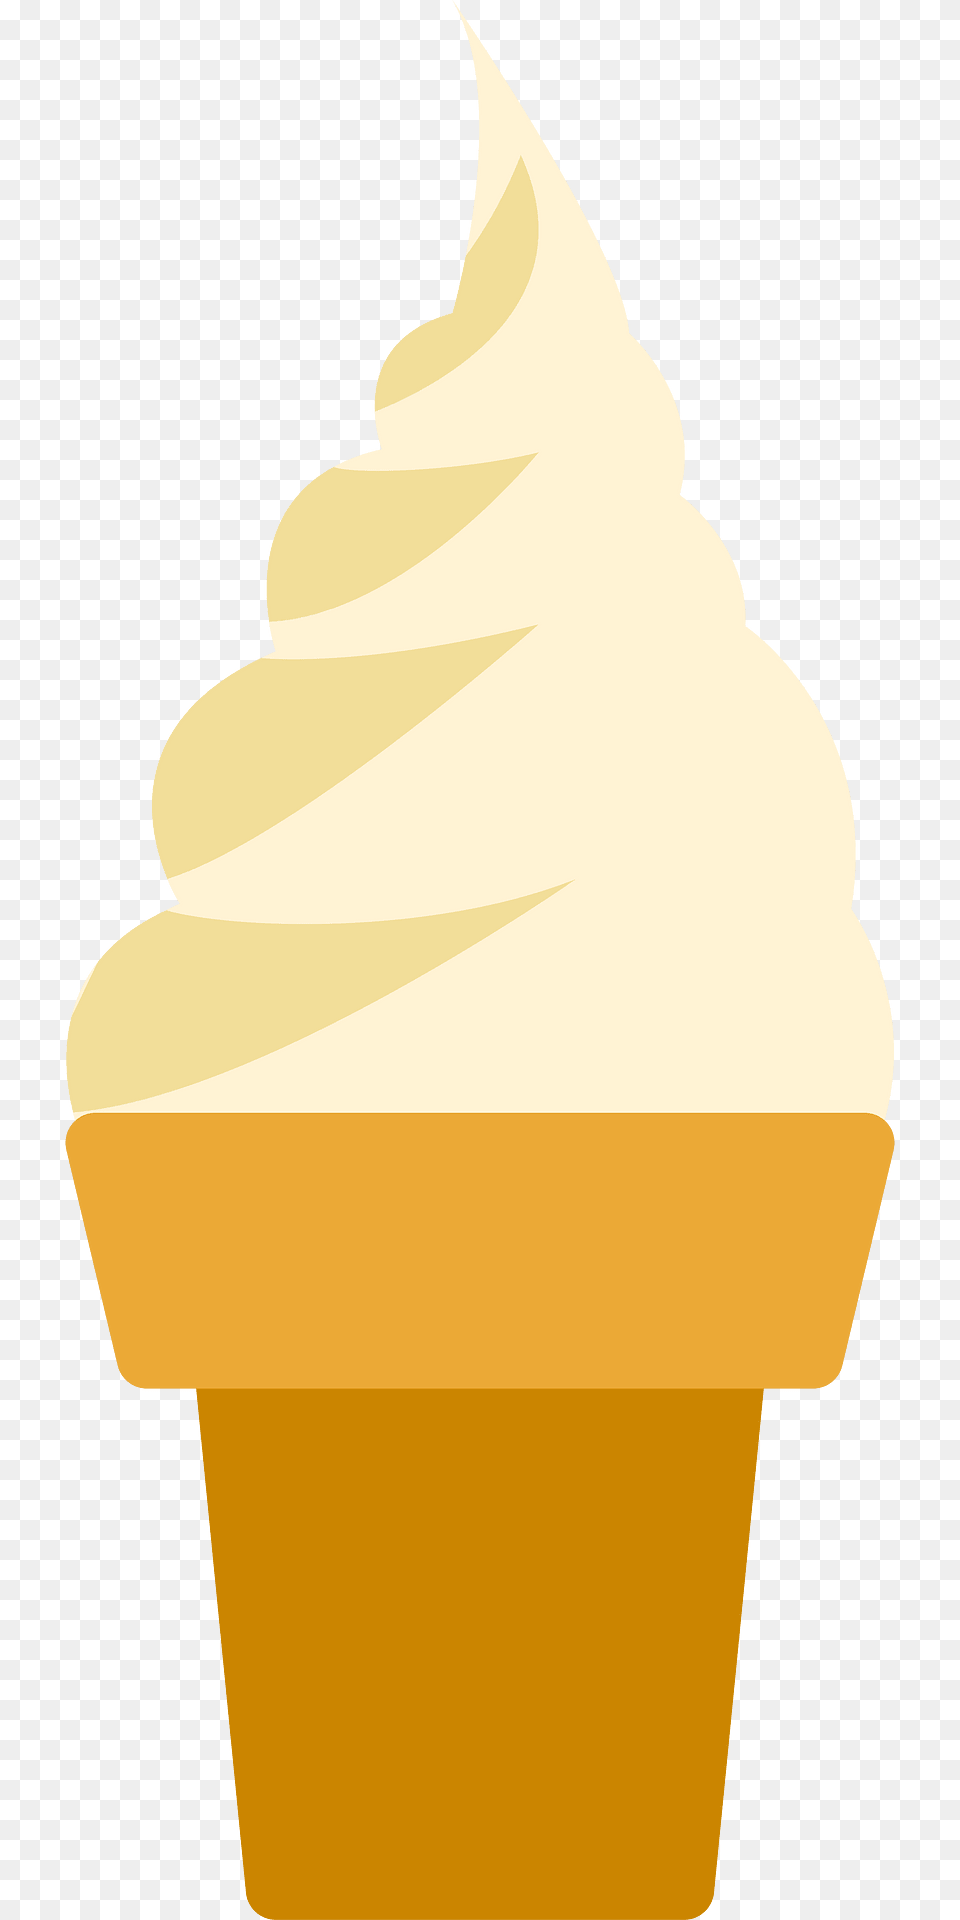 Ice Cream Cone Clipart, Dessert, Food, Ice Cream, Cake Png Image